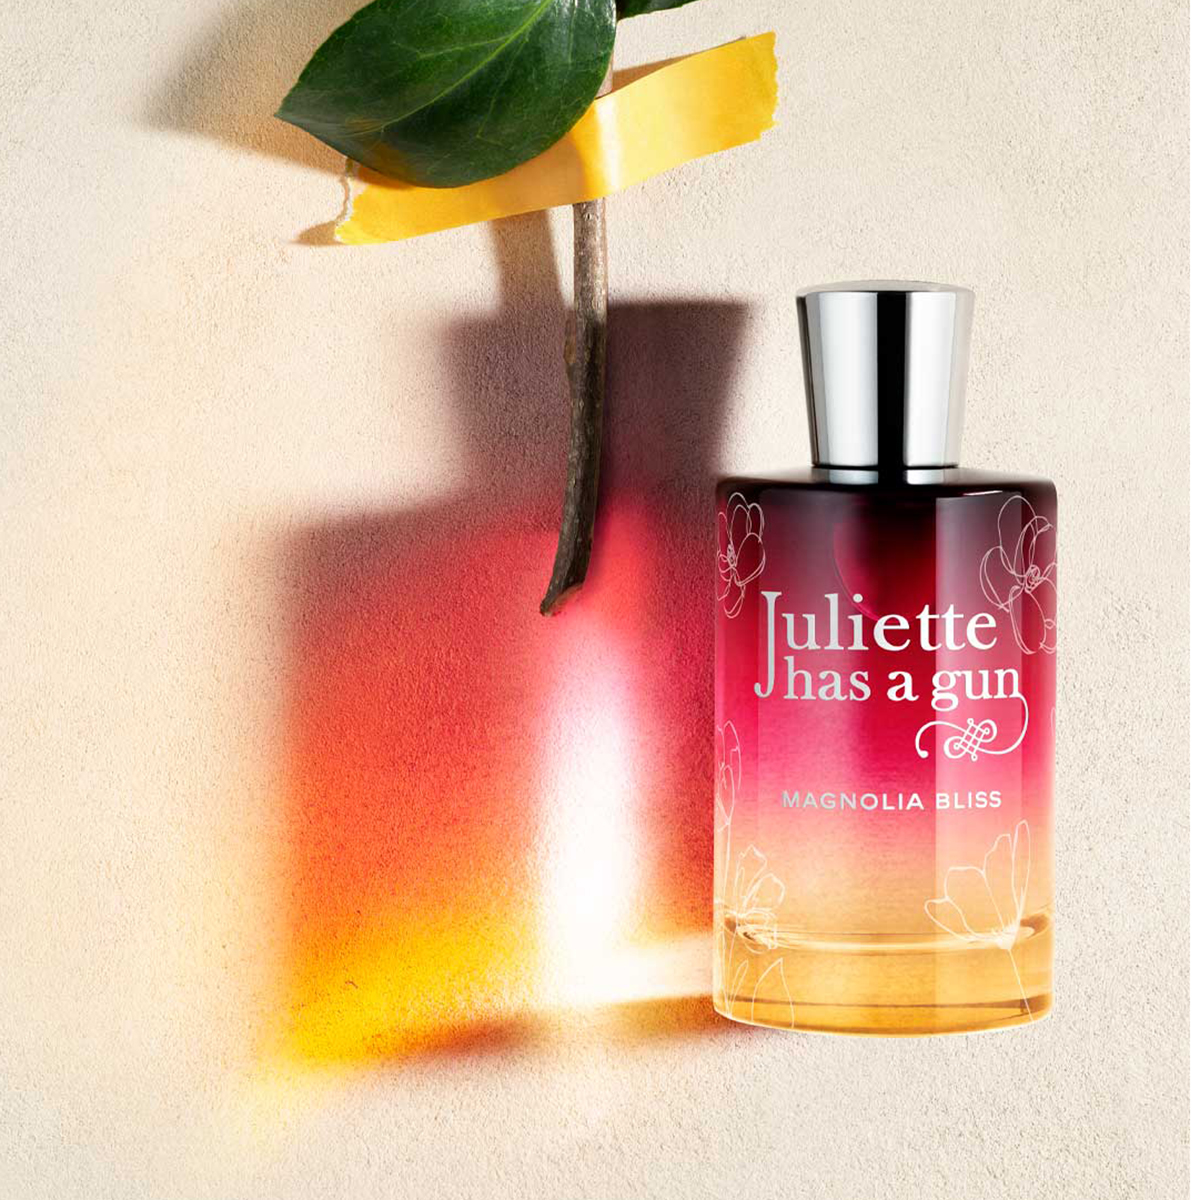 Juliette has a Gun - Magnolia Bliss Eau de Parfum